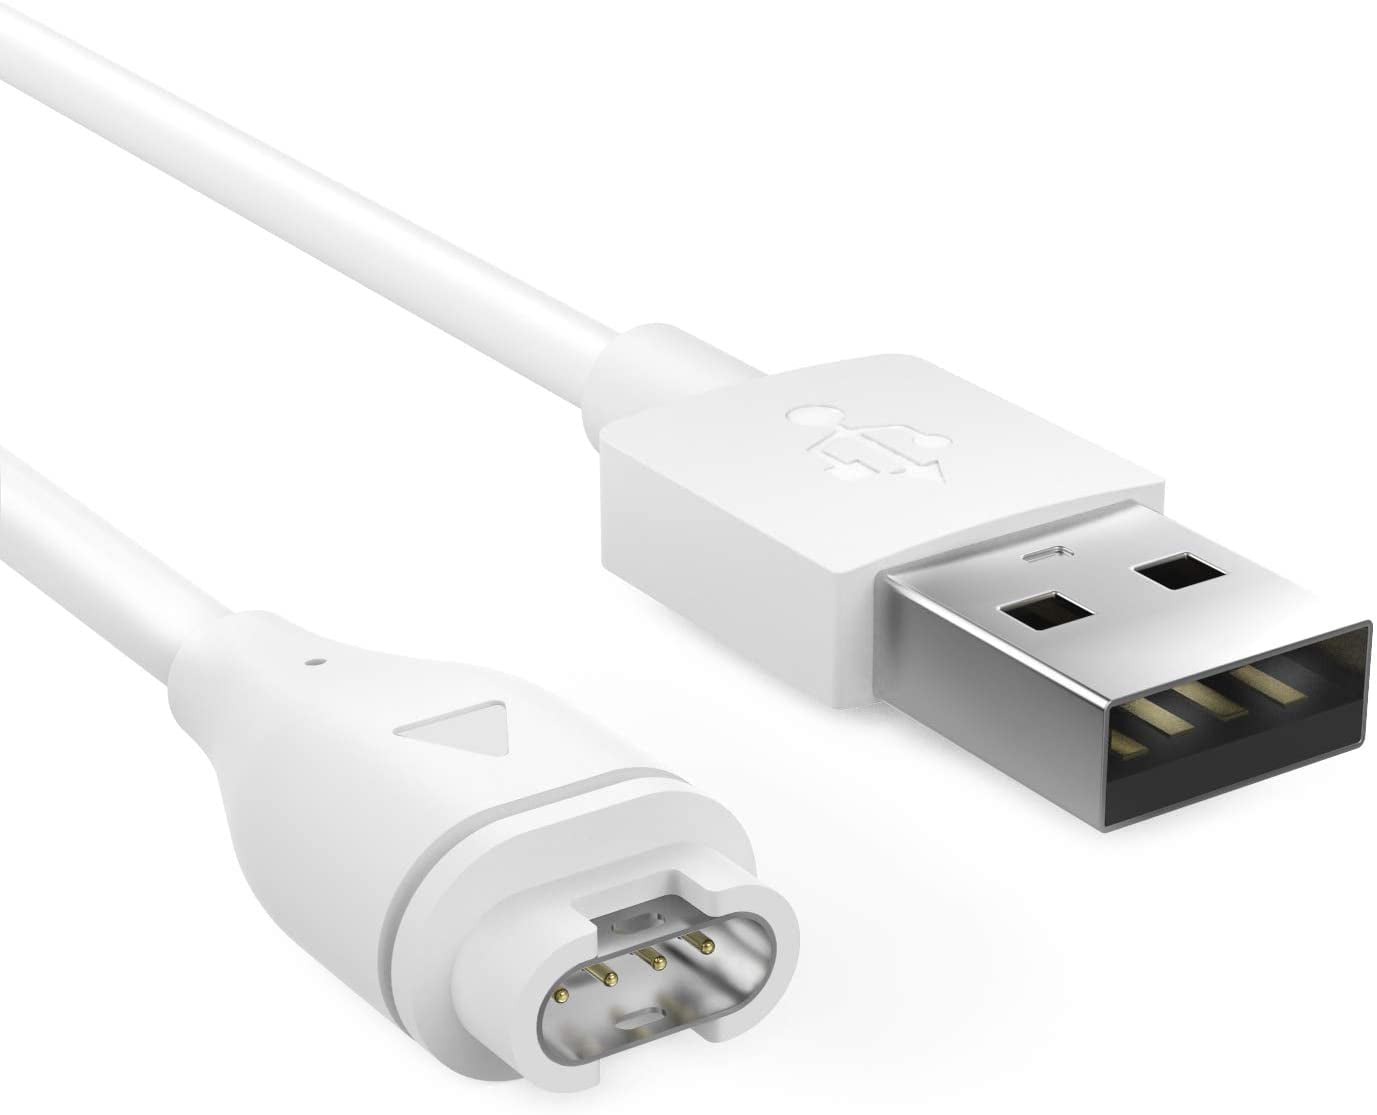 USB Charger Charging Cable for Garmin Fenix 6x 5s 6s Venu Instinct Vivoactive 3 